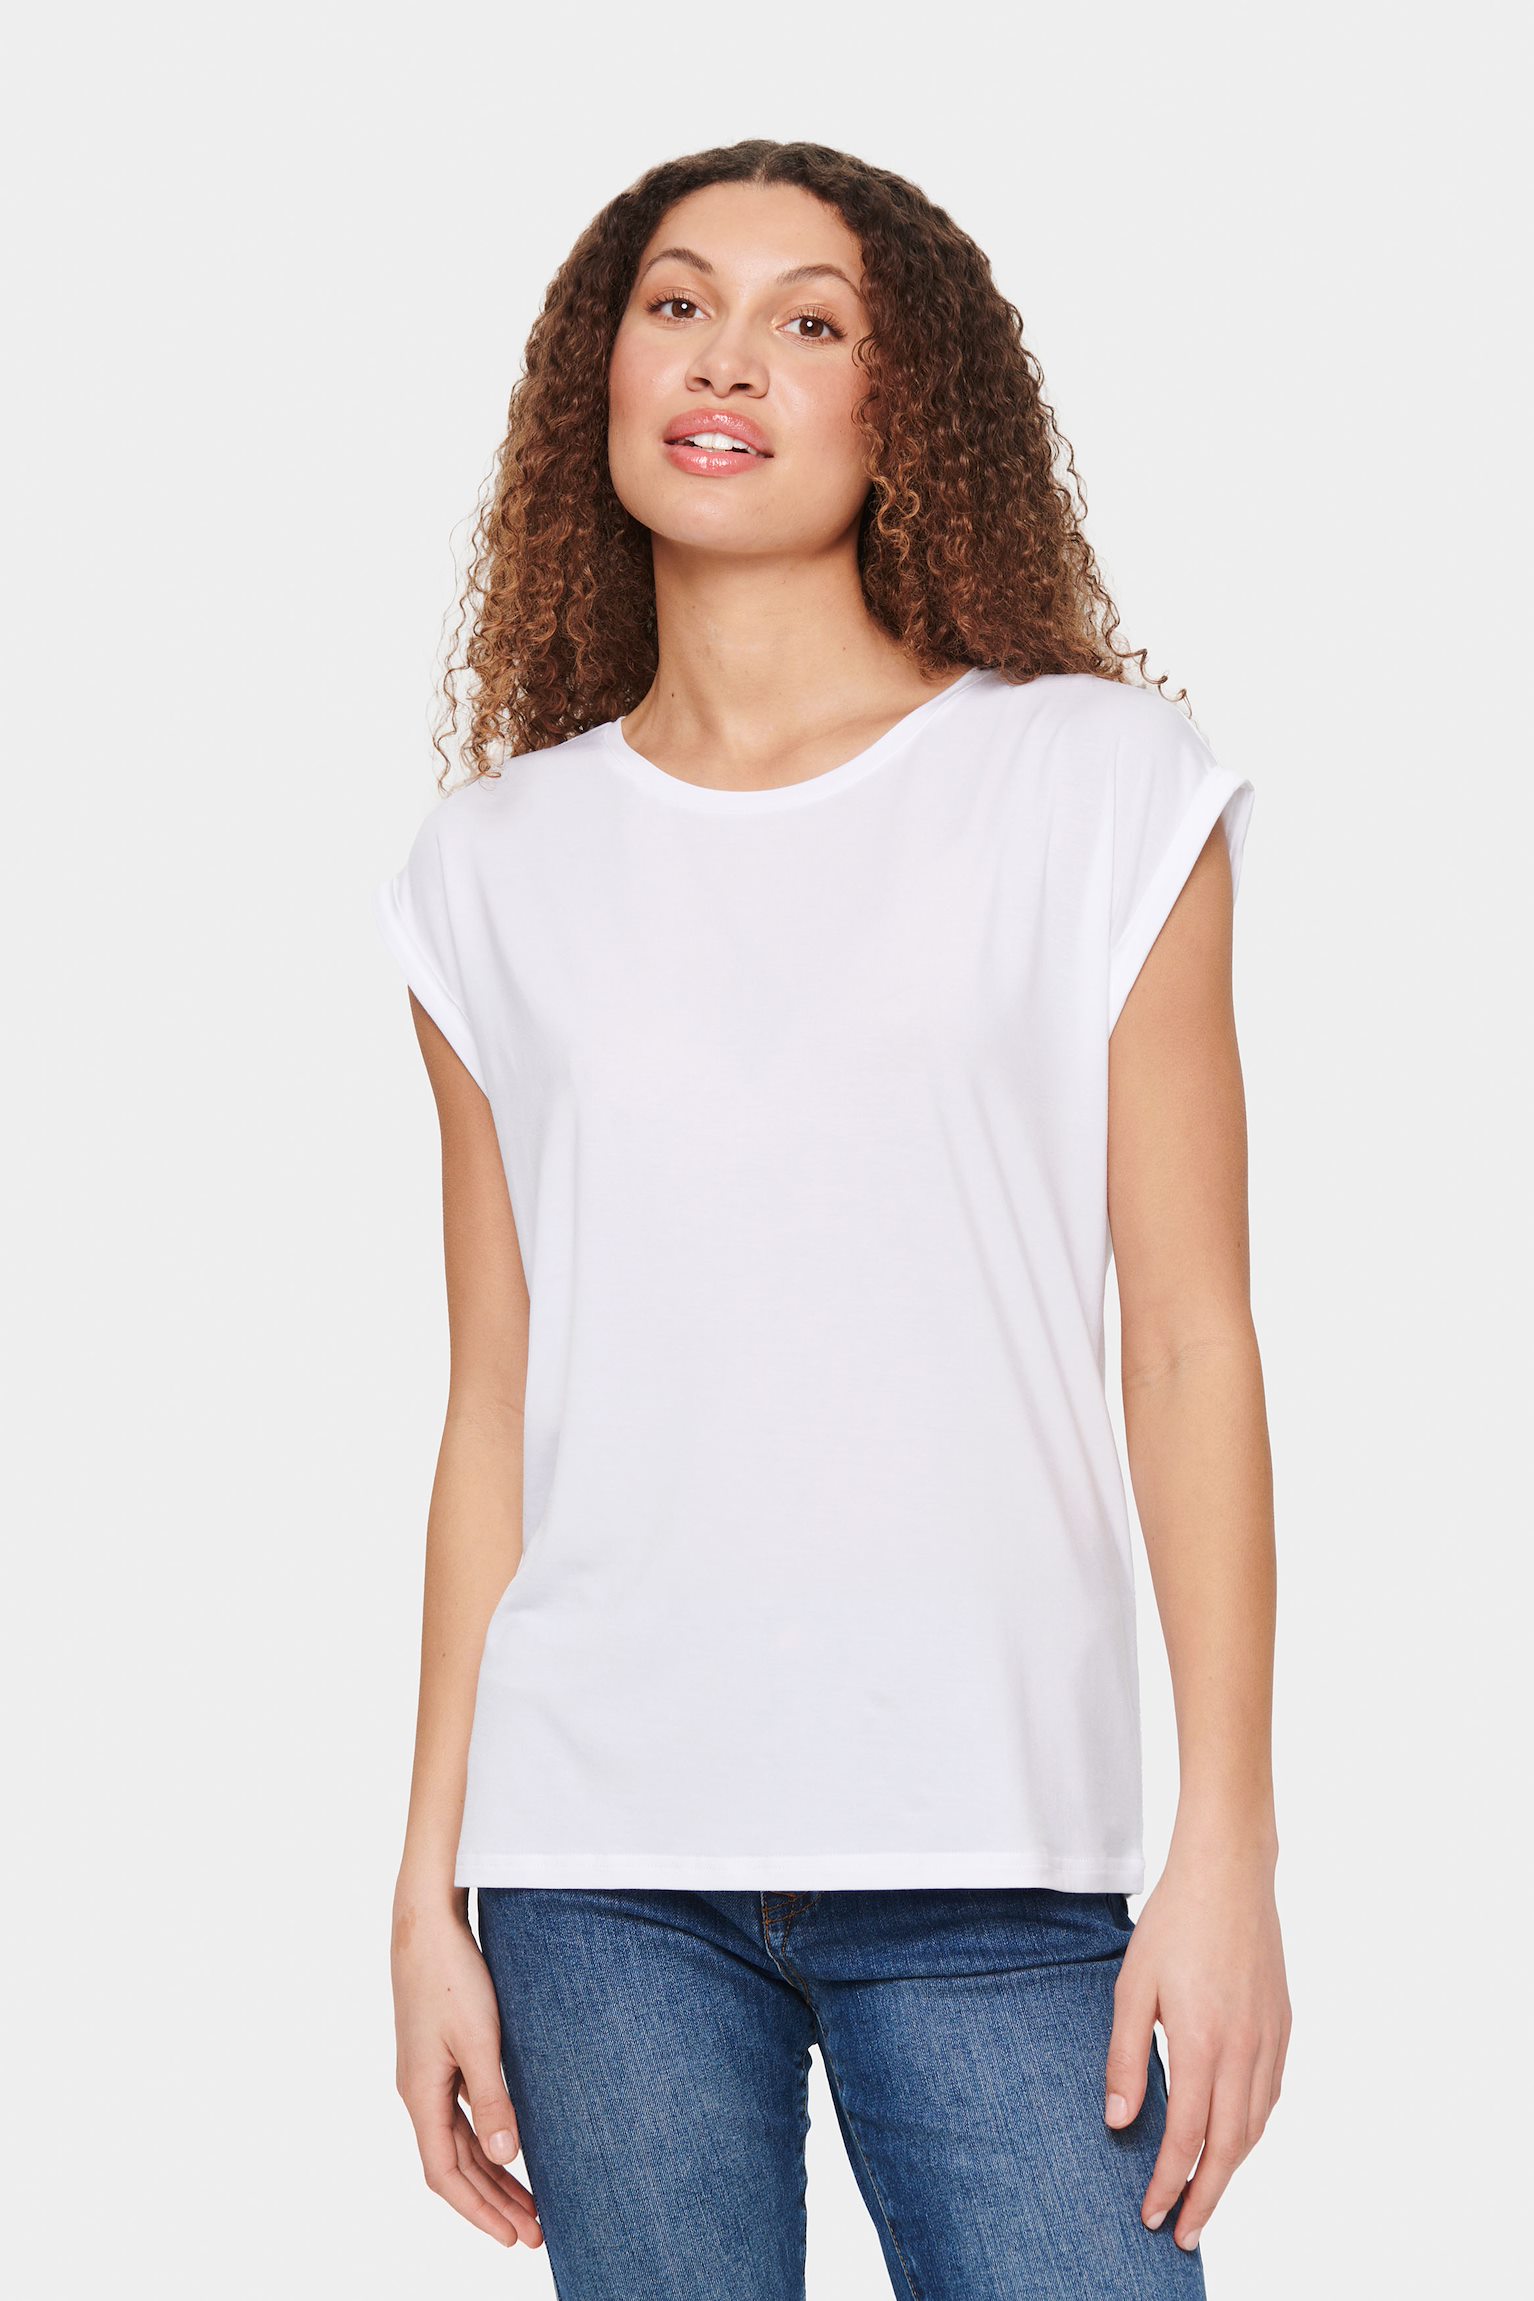 Saint Tropez AdeliaSz T-shirt White